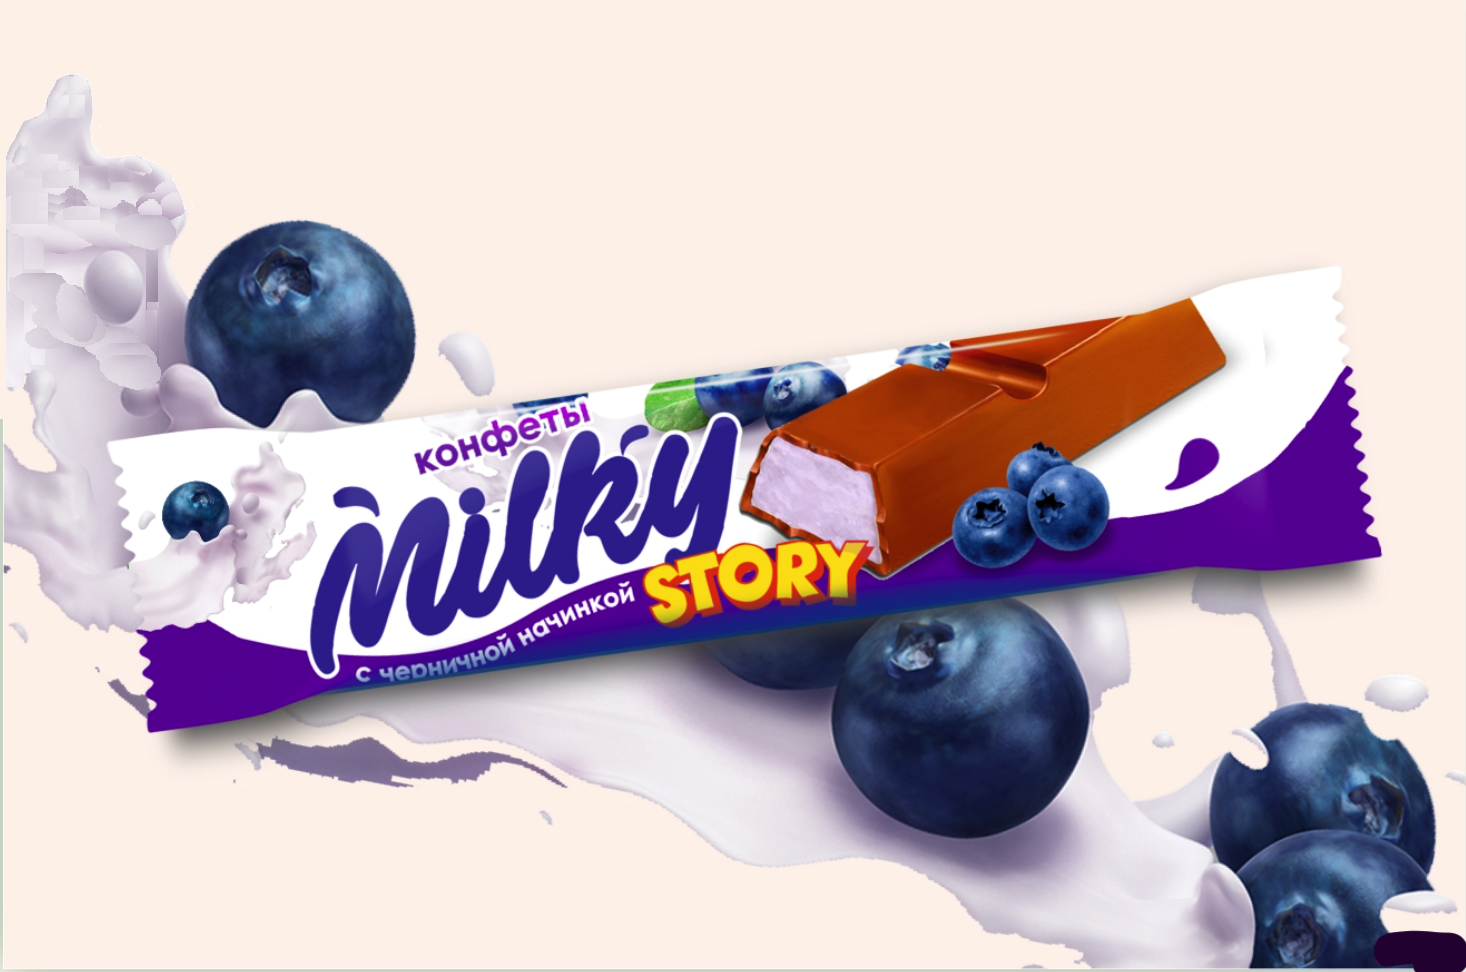 Конфеты "Milky Story" глазированные .с Черничным вкусом 1 кг/Сибирская белочка